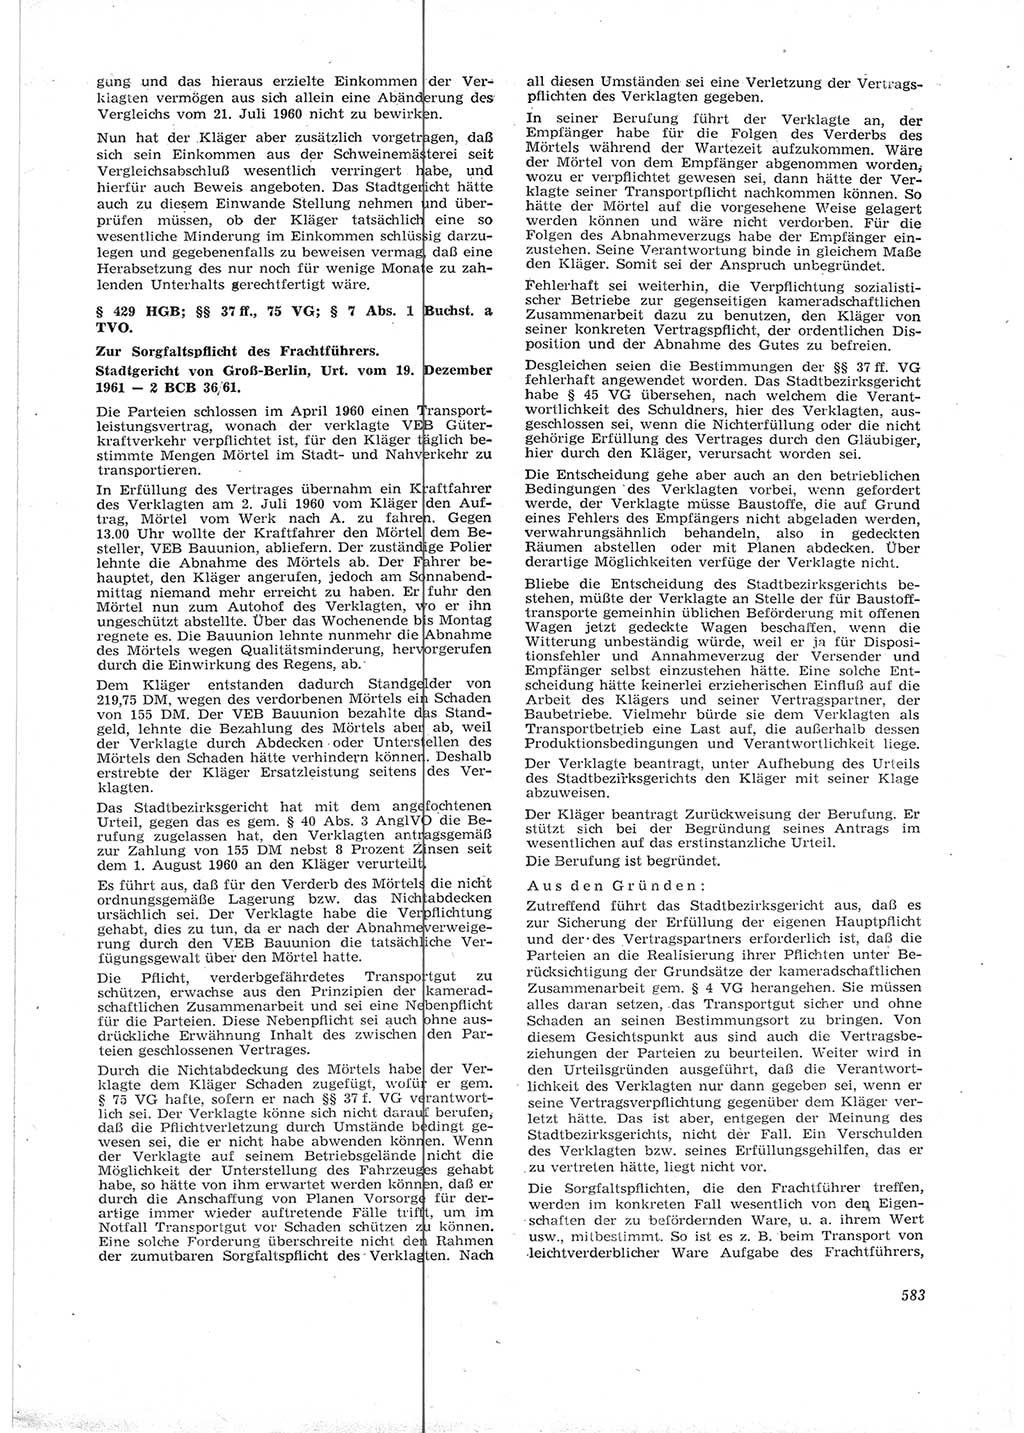 Neue Justiz (NJ), Zeitschrift für Recht und Rechtswissenschaft [Deutsche Demokratische Republik (DDR)], 16. Jahrgang 1962, Seite 583 (NJ DDR 1962, S. 583)